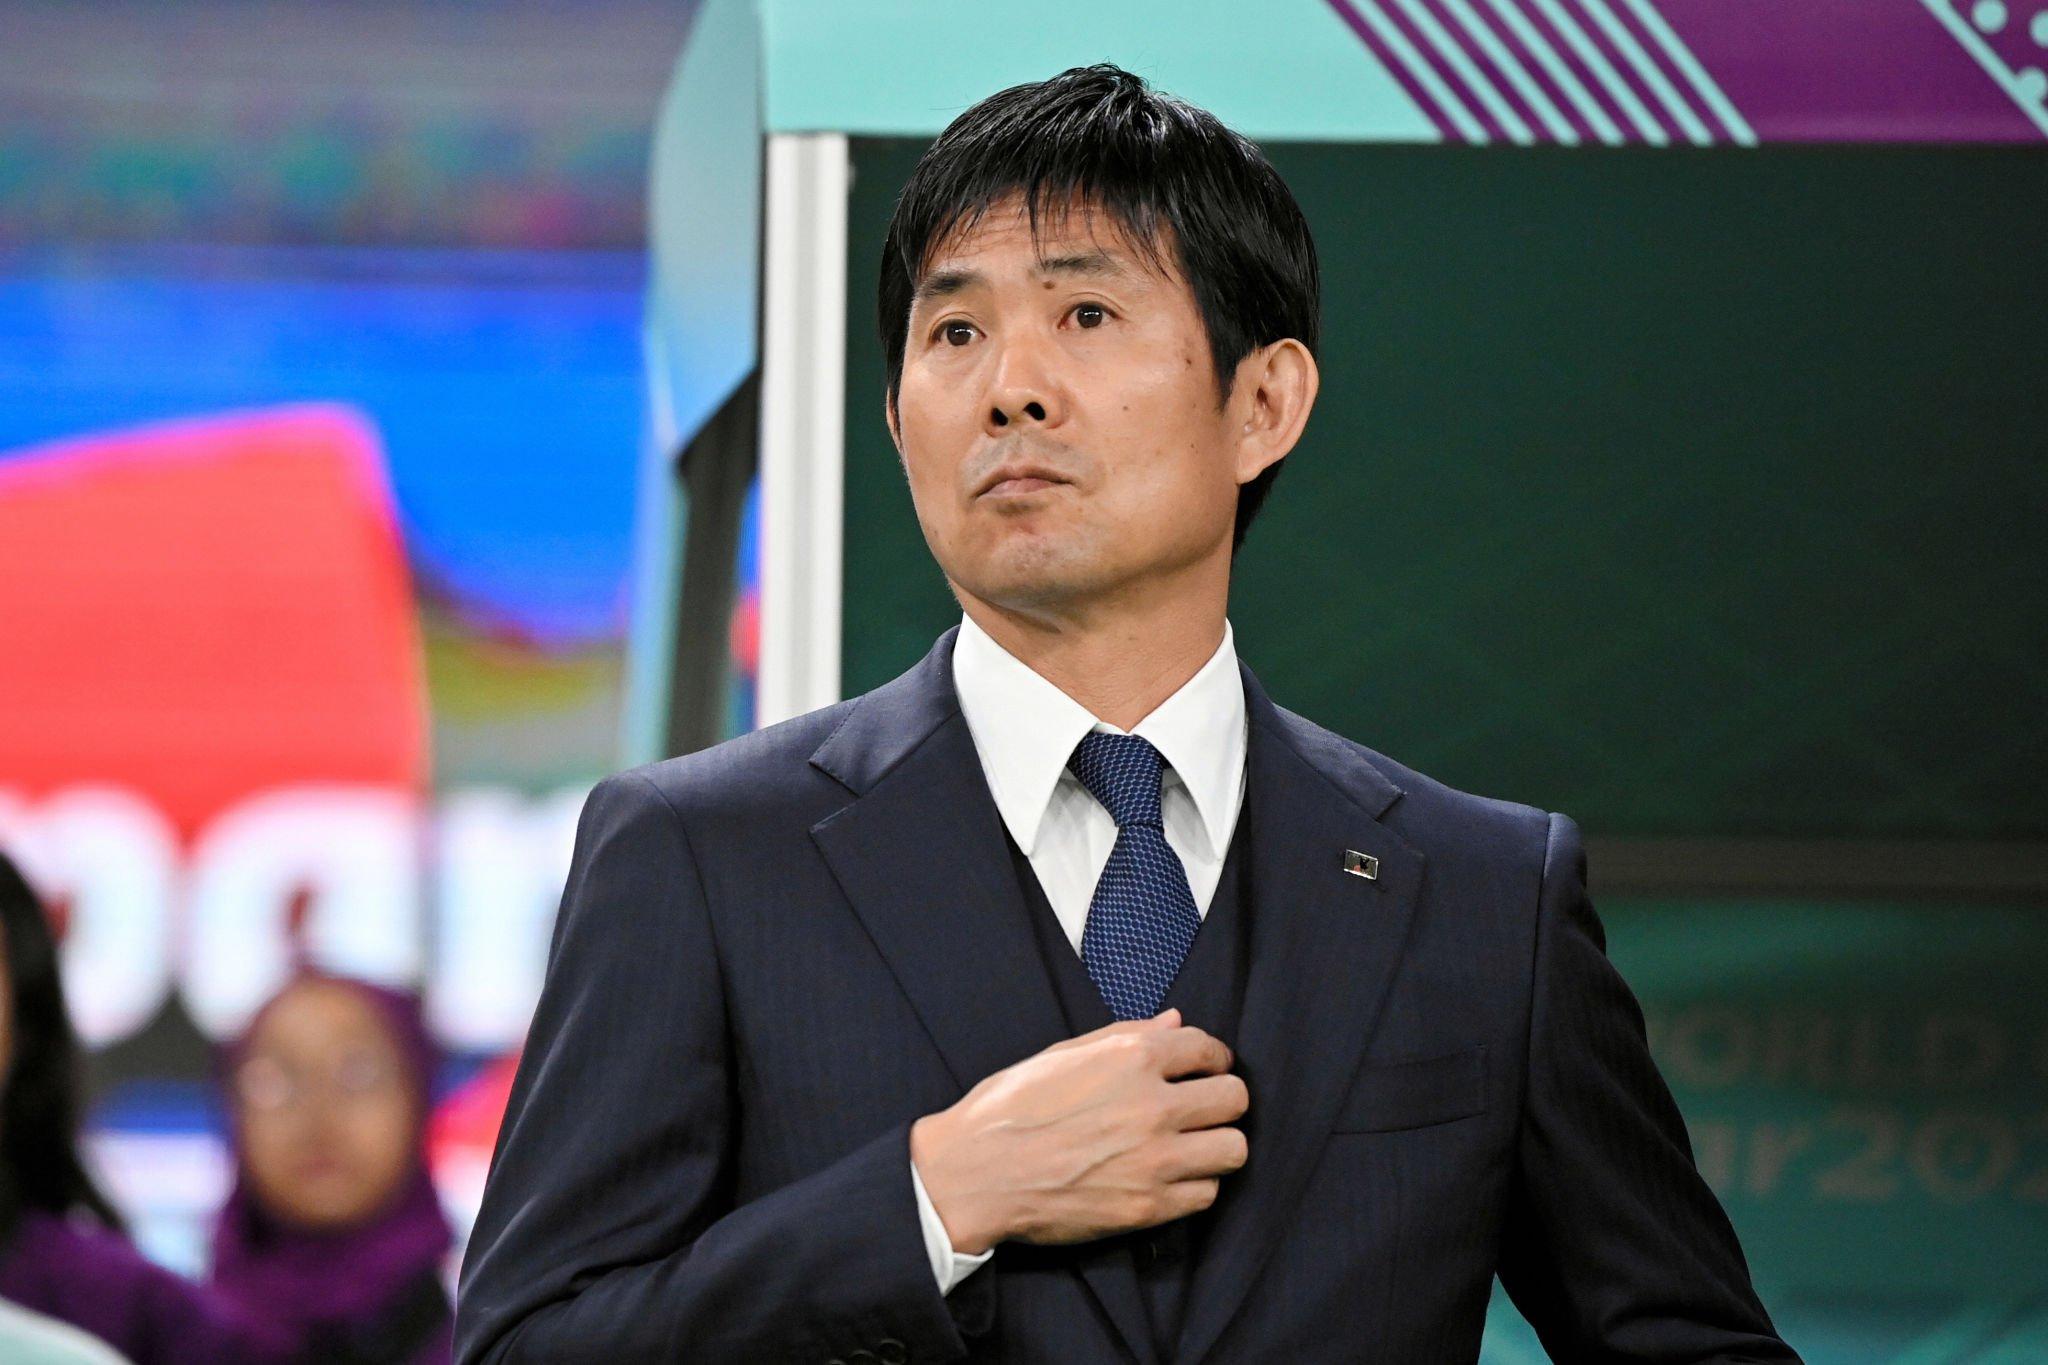 كان هاجيمي مورياسو مساعدا لمدرب اليابان عندما وصل إلى دور الـ16 في عام 2018